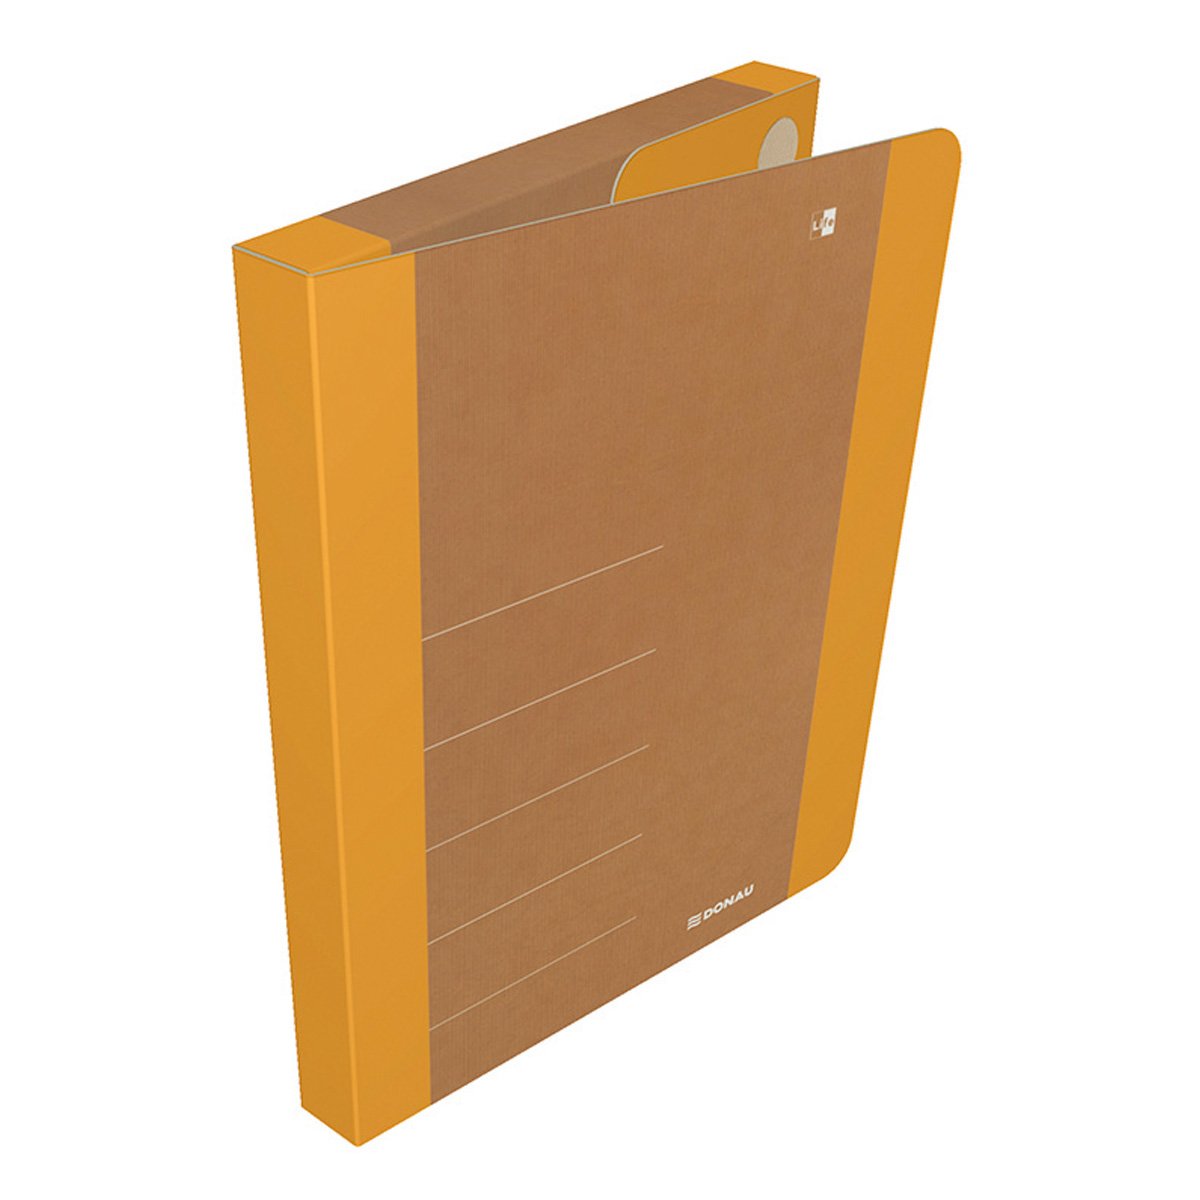 DONAU Box na spisy DONAU LIFE, A4, karton, neonově oranžový